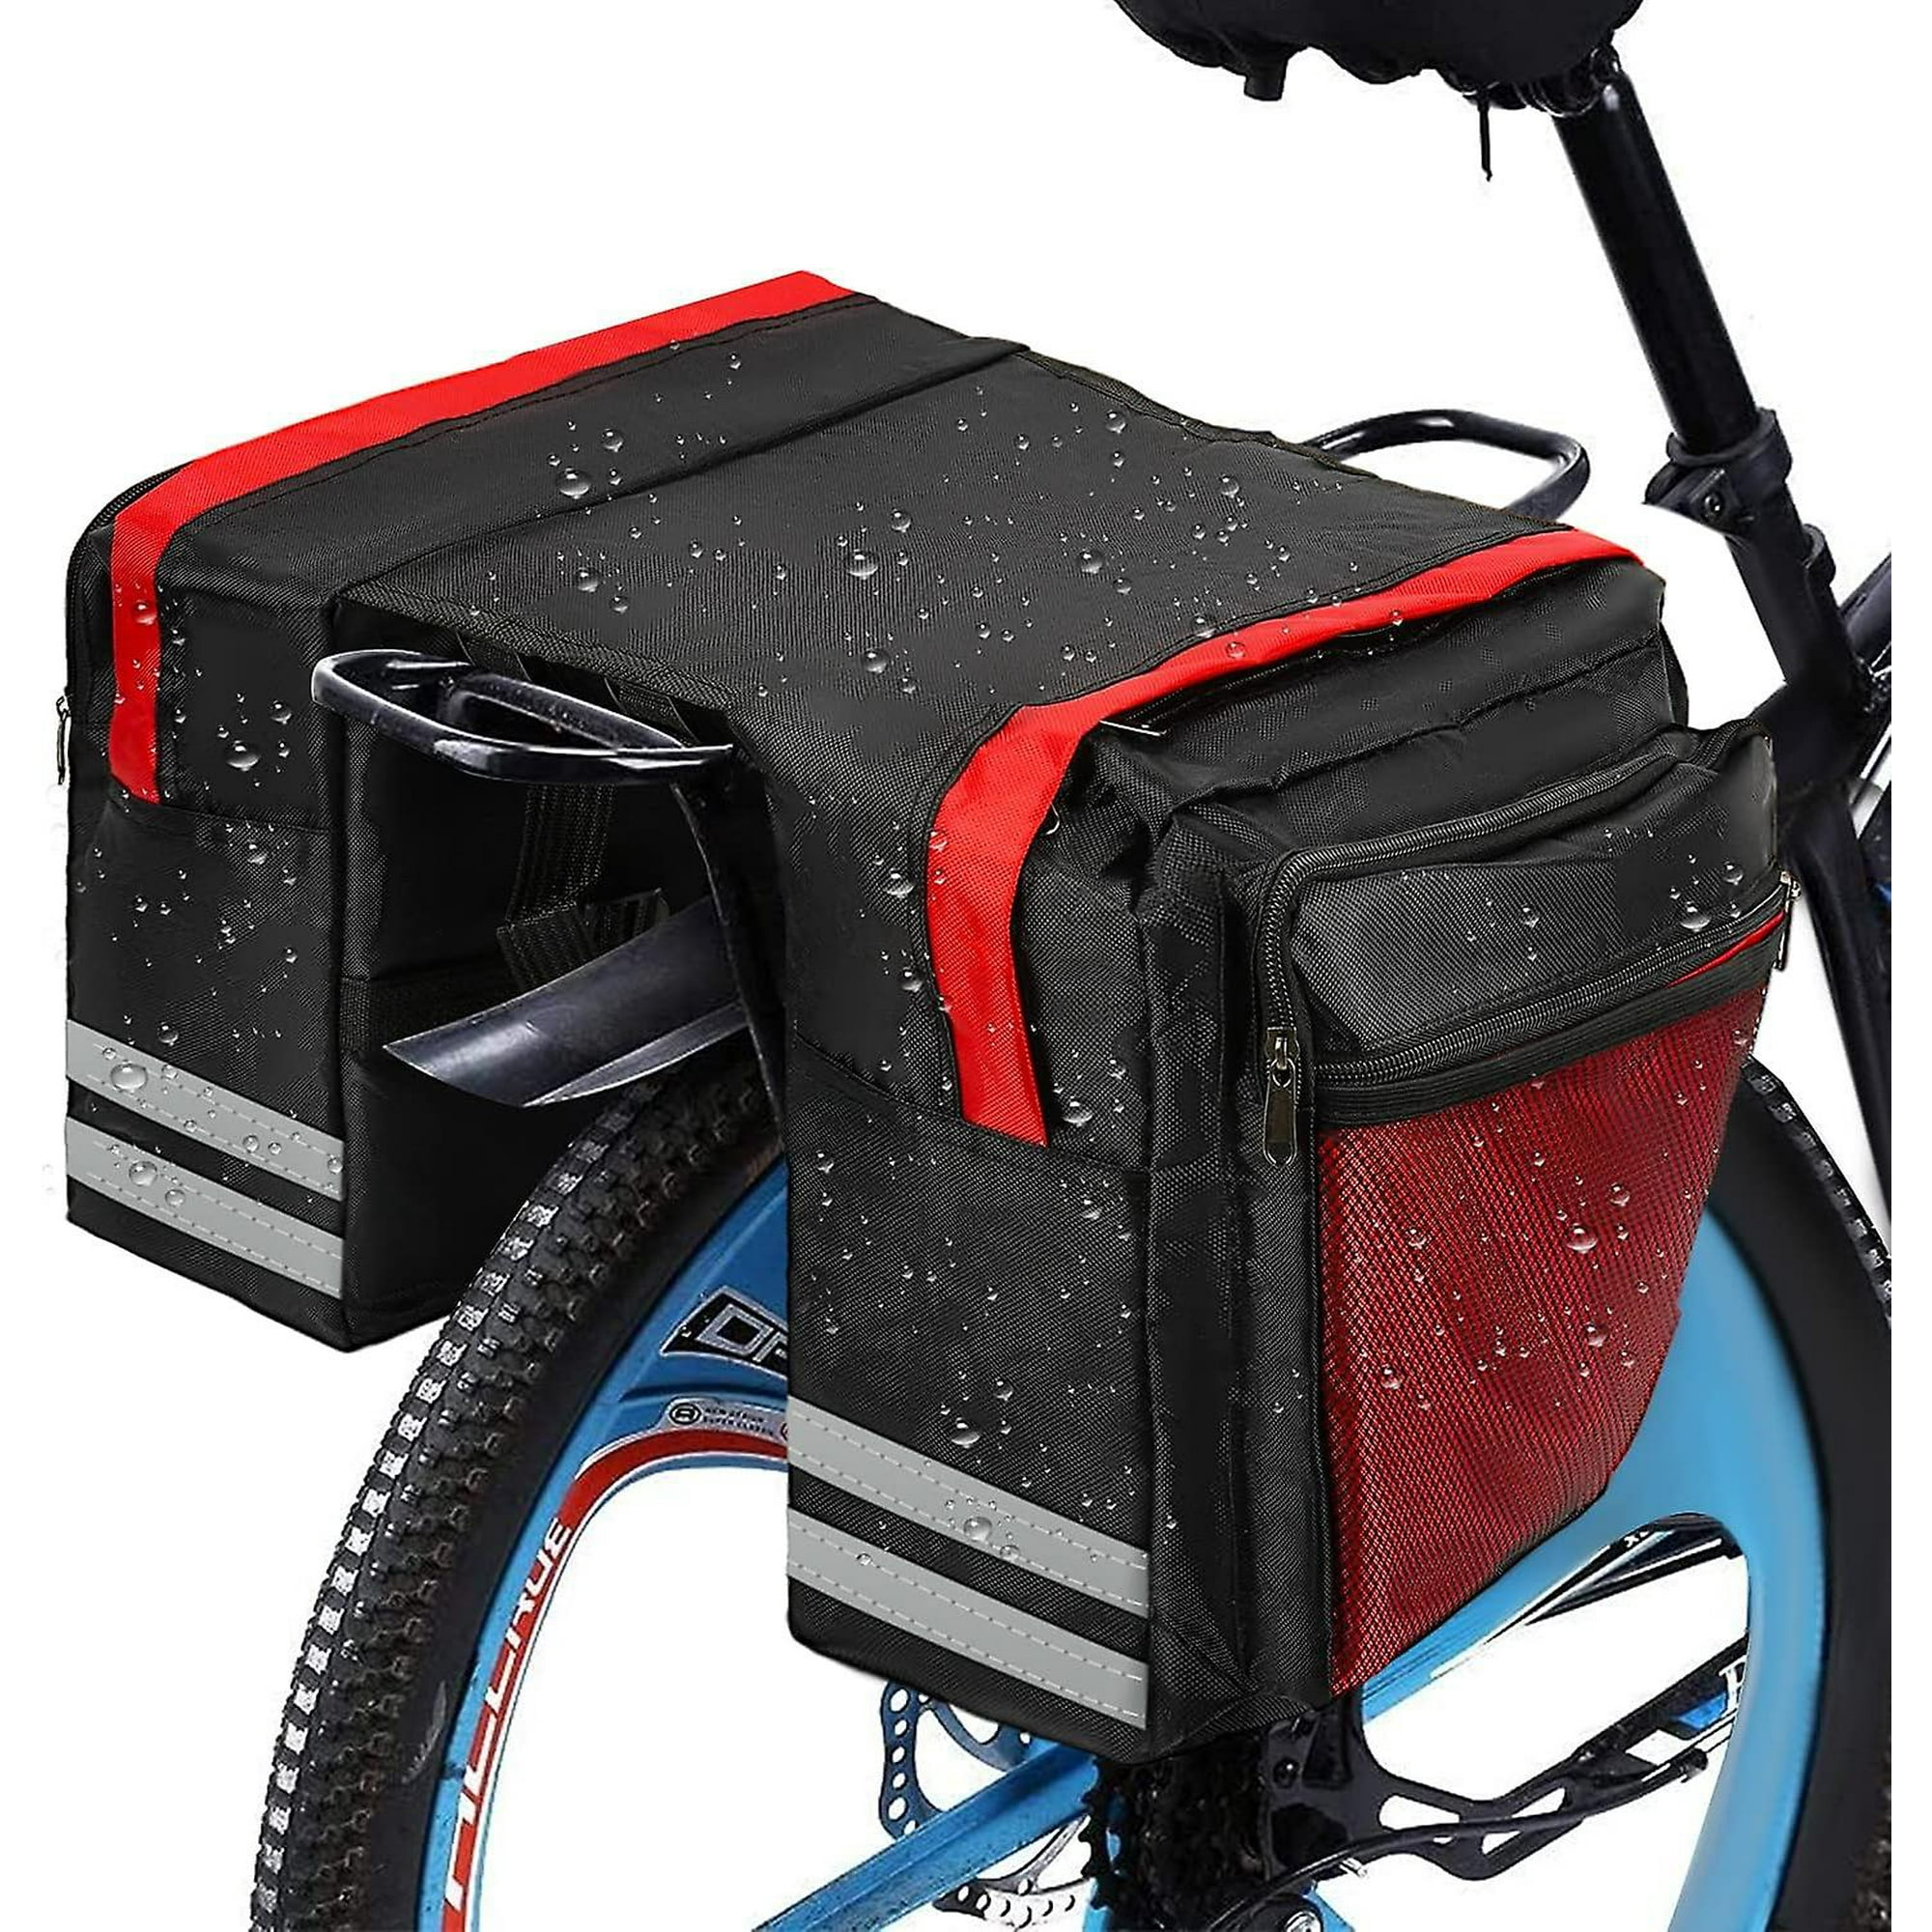 Garneck Alforjas de bicicleta Bolsa de alforja de bicicleta Bolsa de sillín  de bicicleta Bolsa de asiento trasero para bicicleta Bolsa de transporte